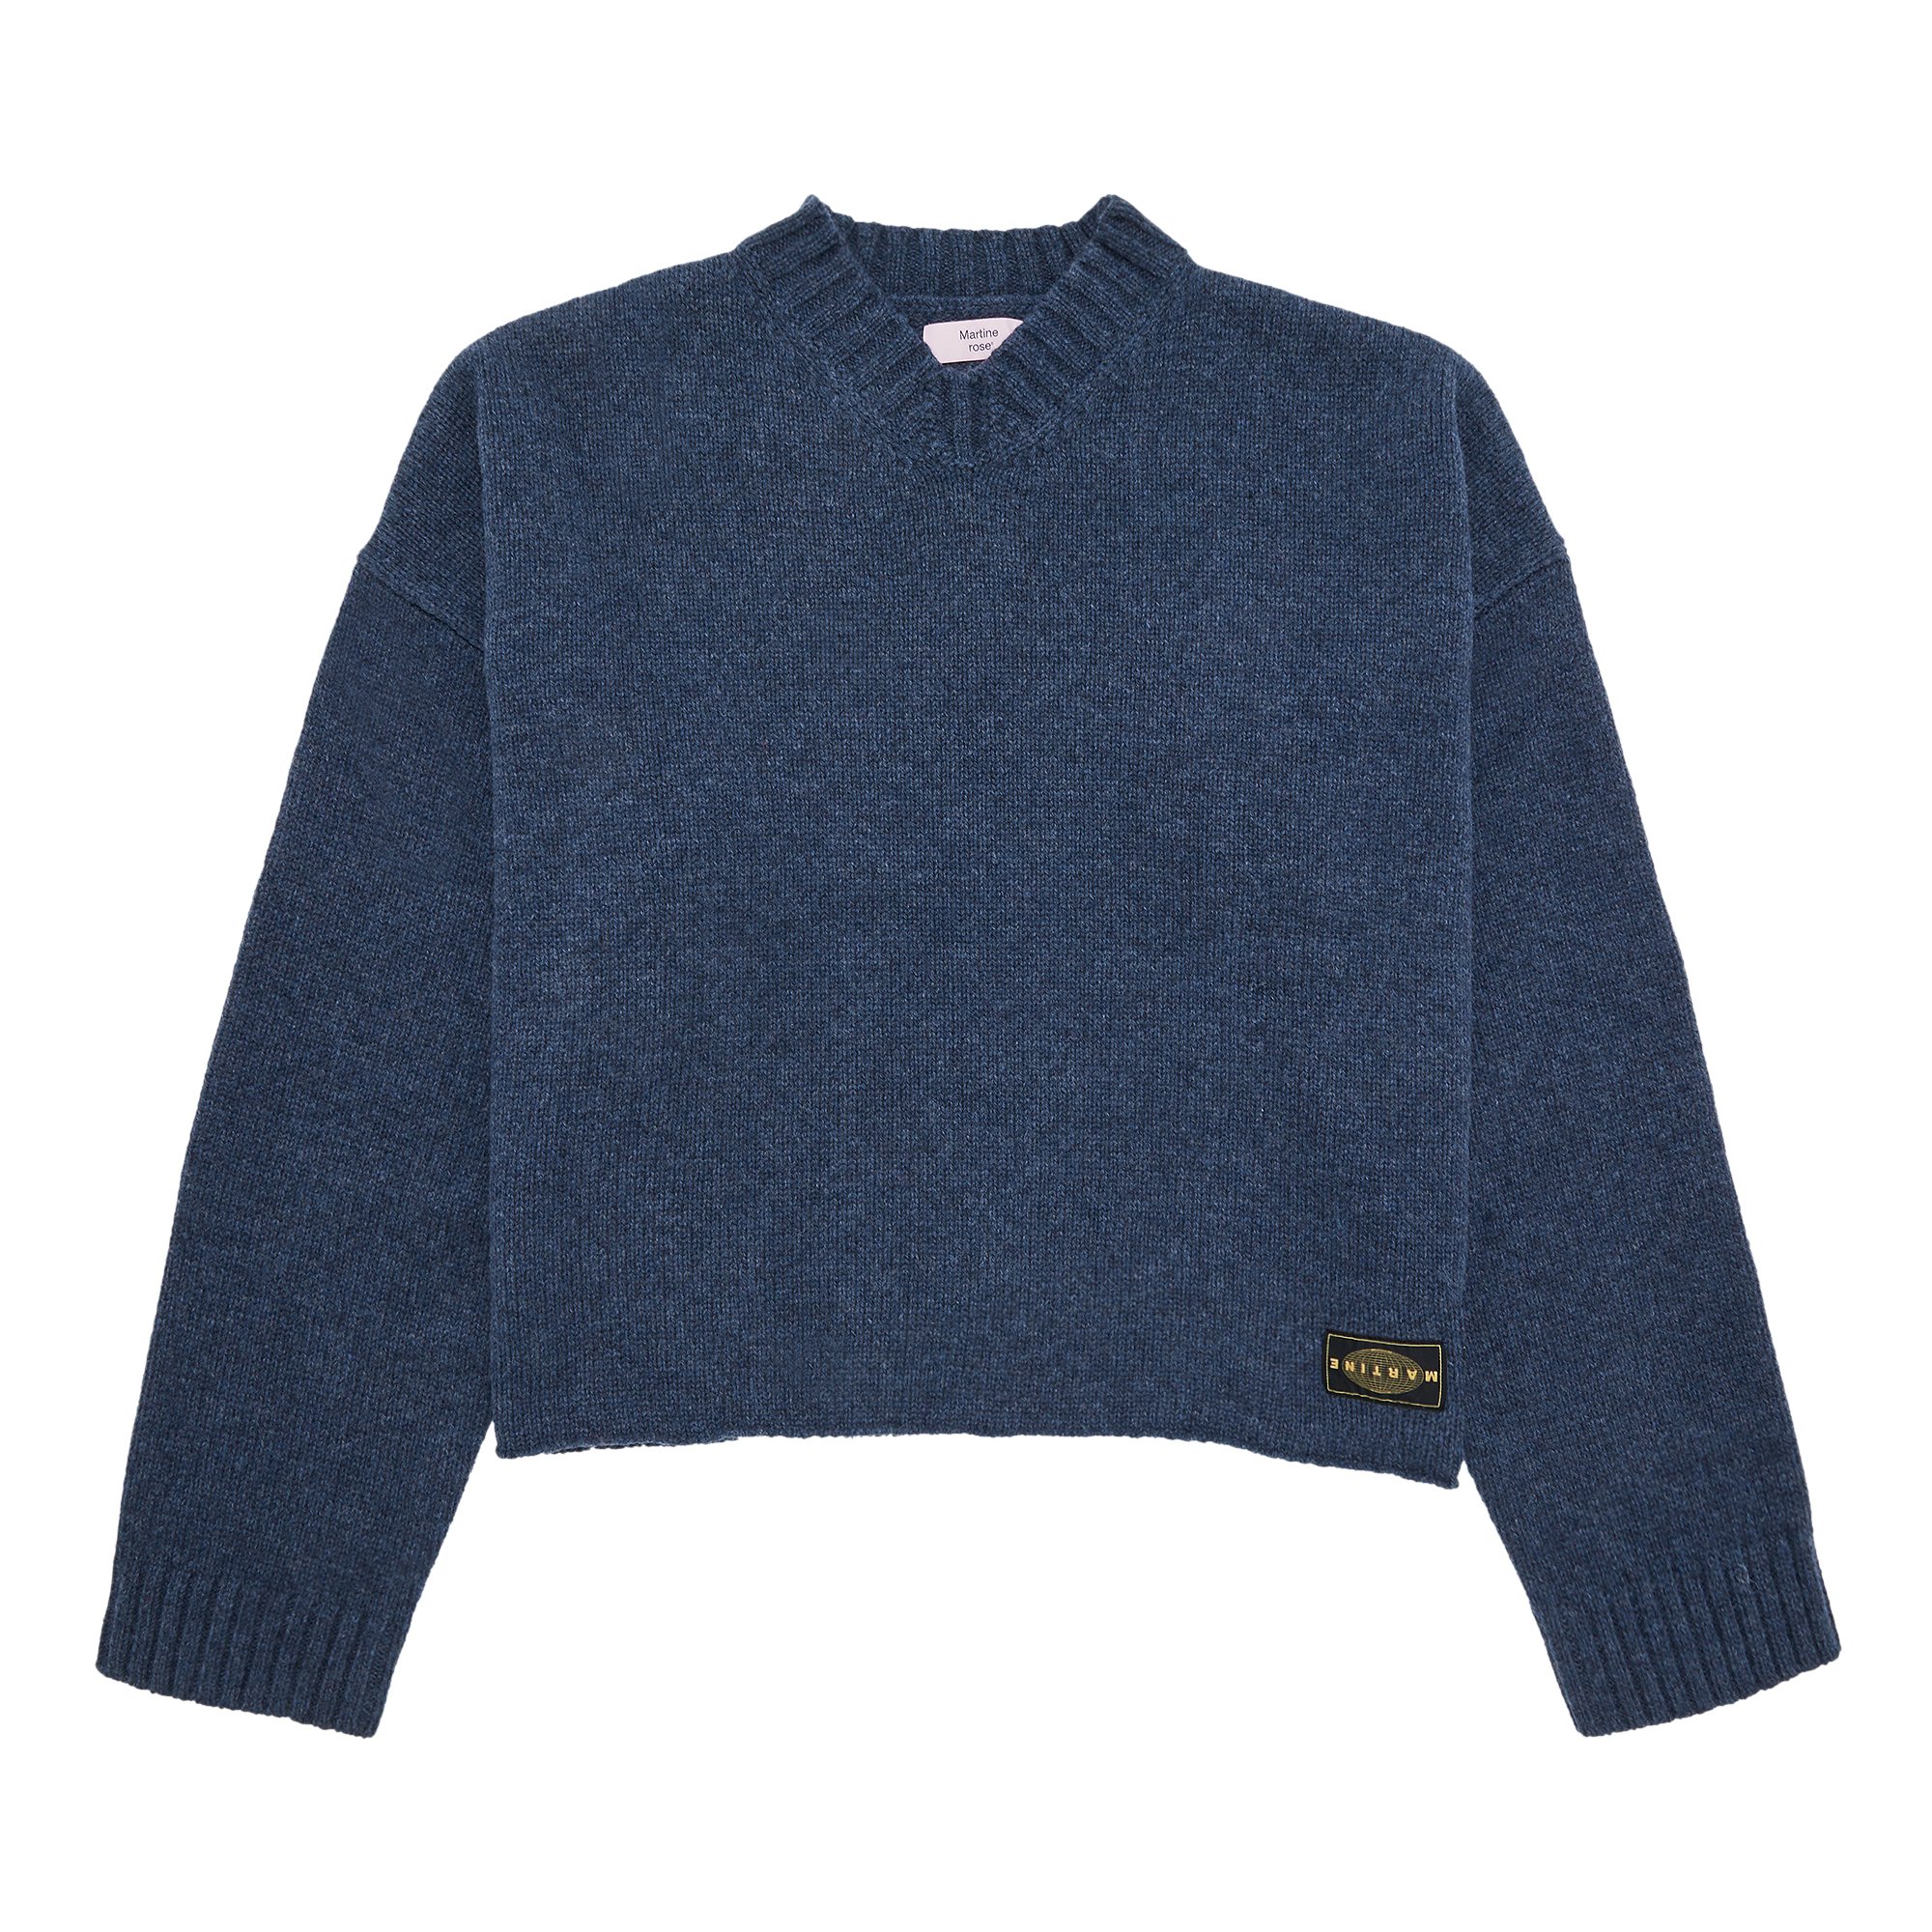 Buy Martine Rose Oversized V Neck Sweater 'Indigo' - MRAW23 927 